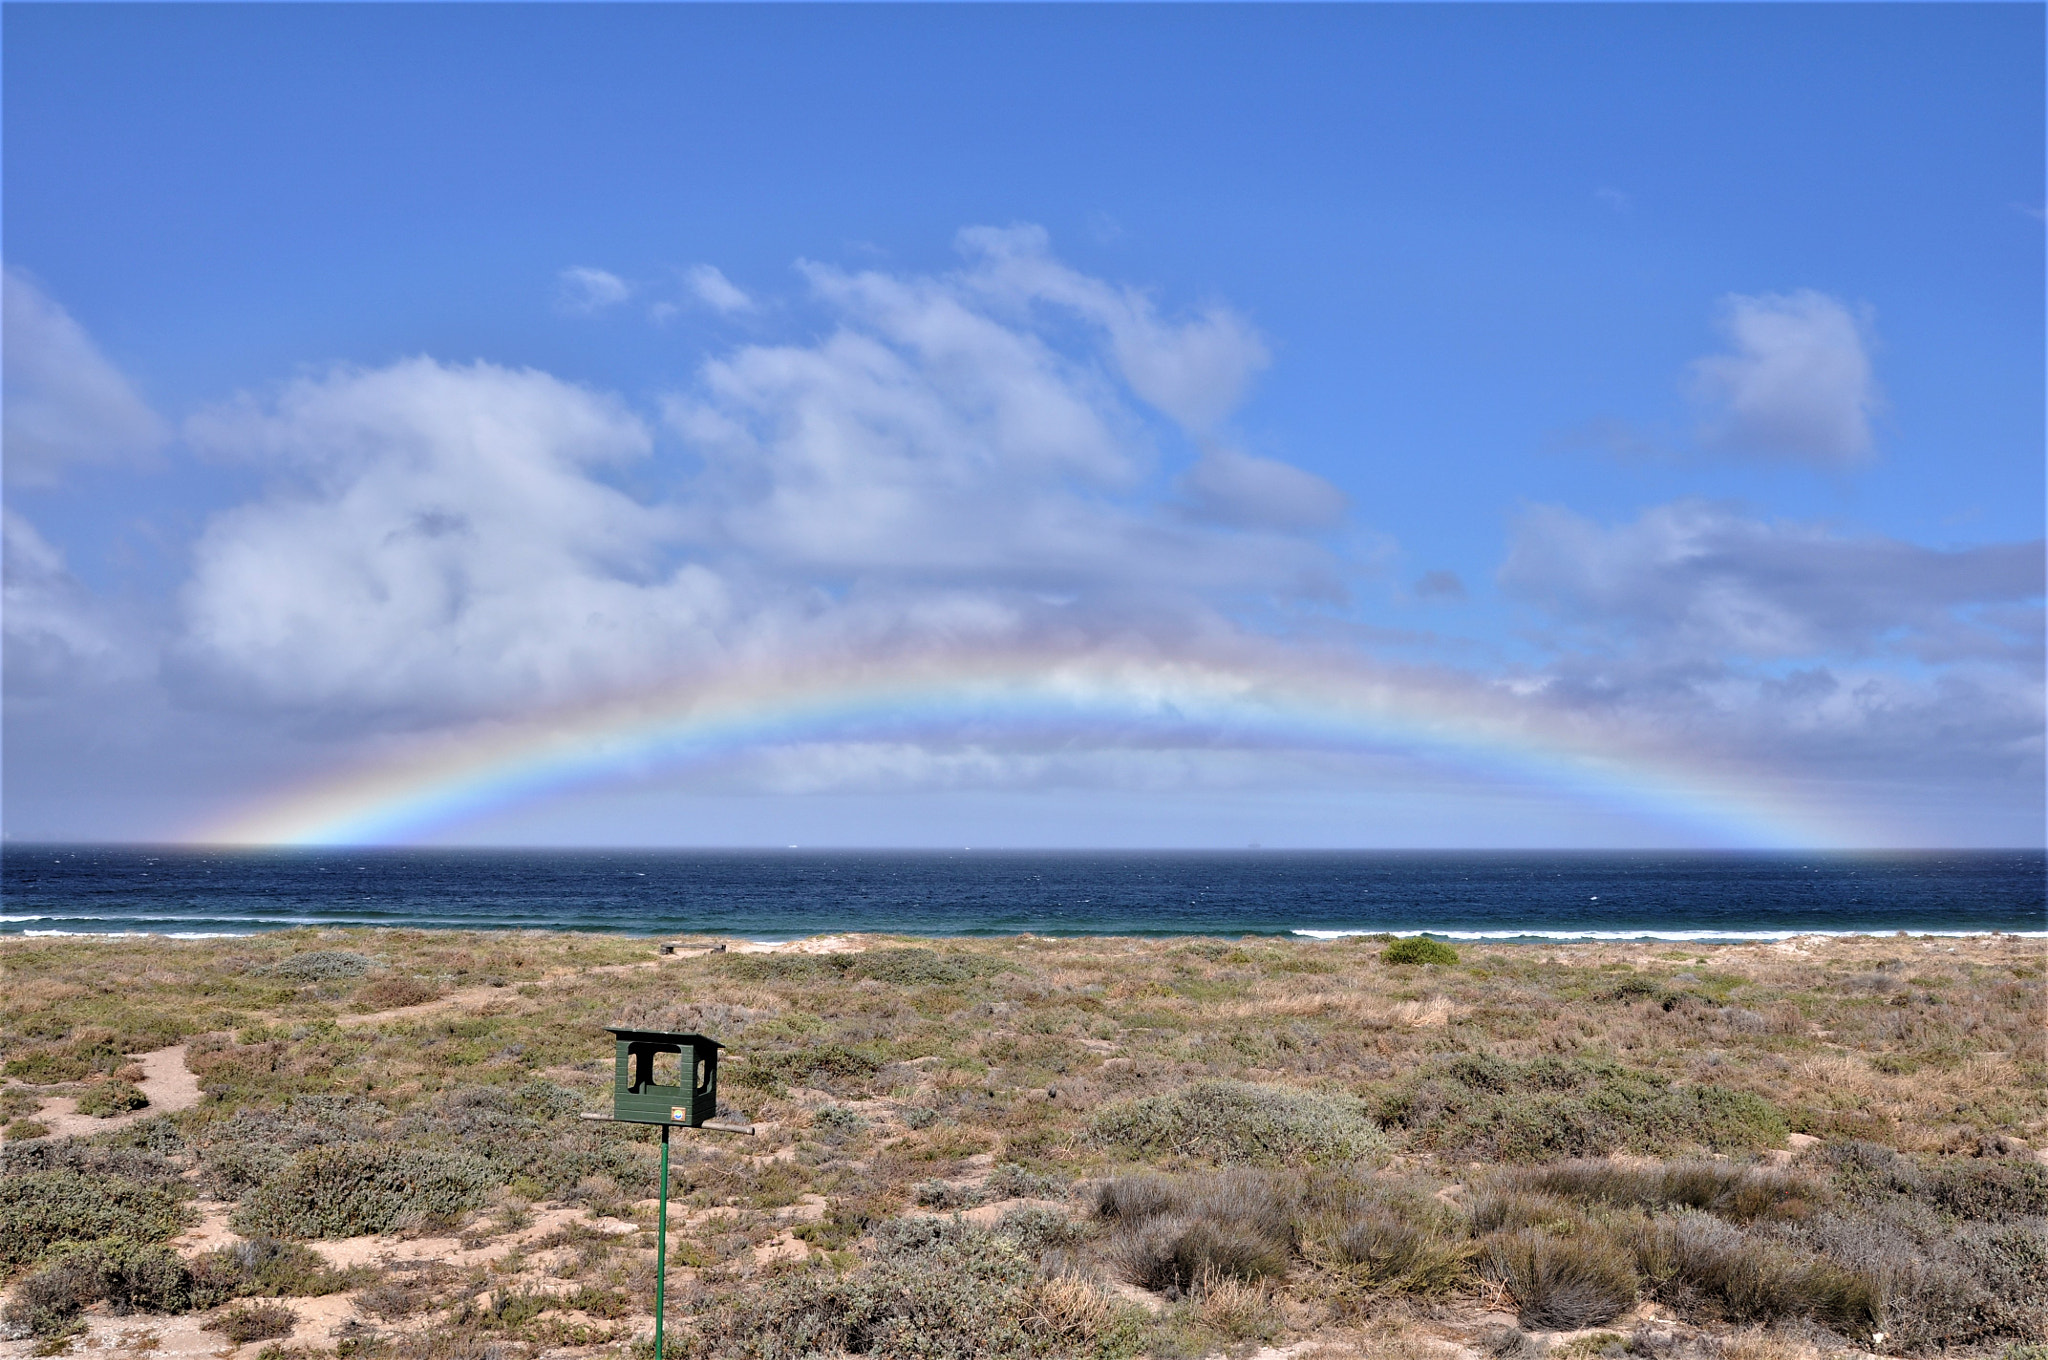 Nikon D90 sample photo. South africa rainbow photography